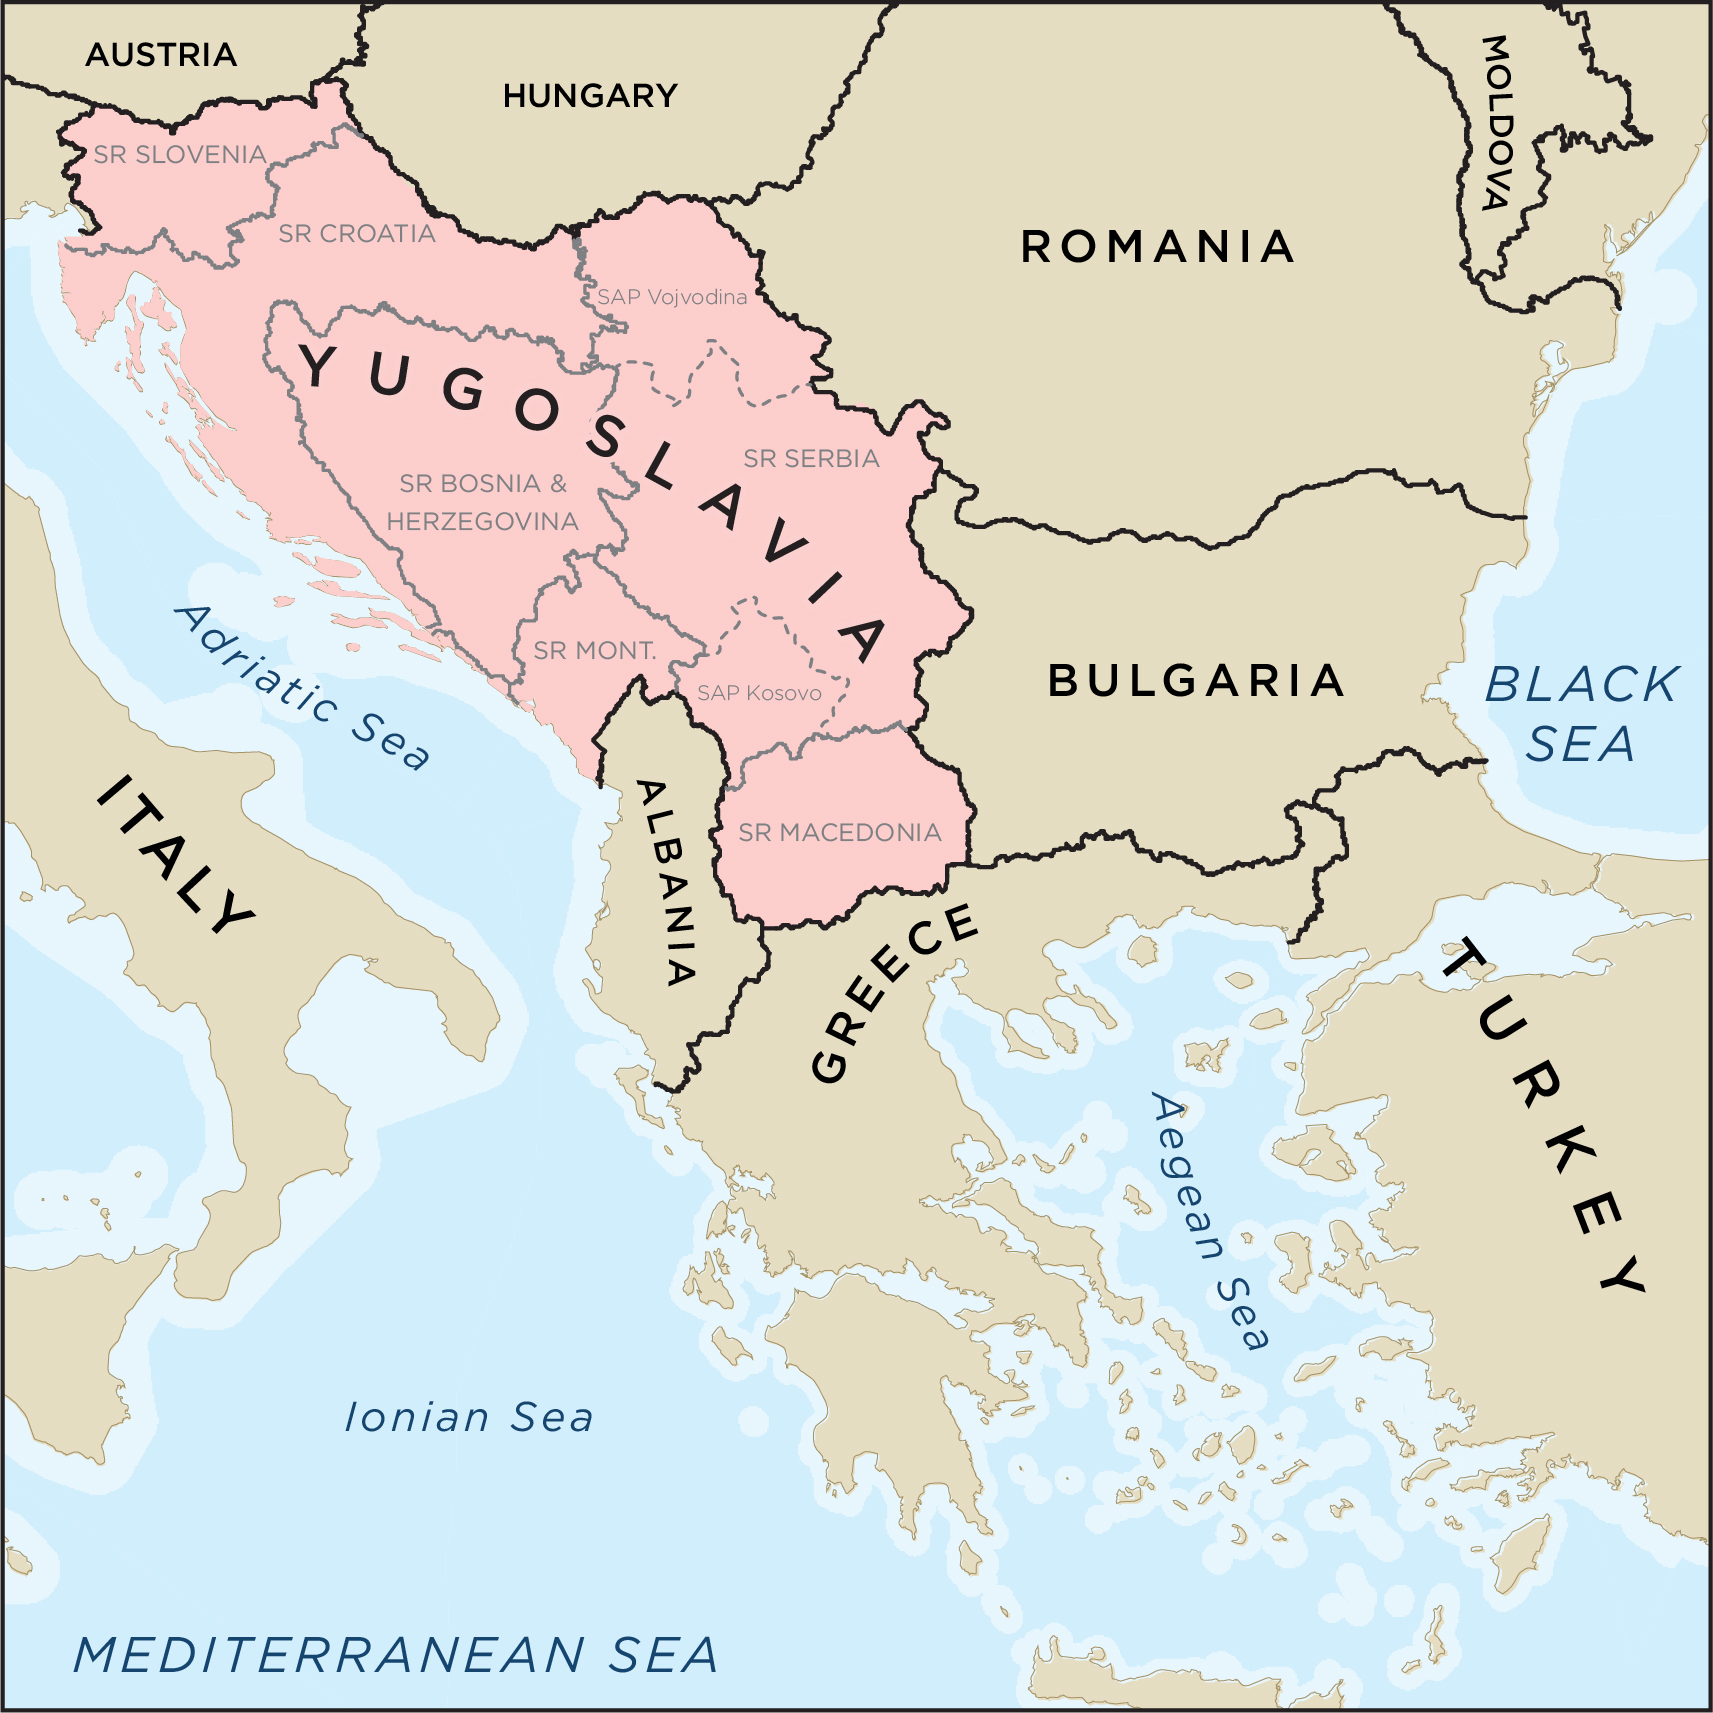 세르비아-크로아티아-슬로베니아 왕국&#44; 유고슬라비아 왕국